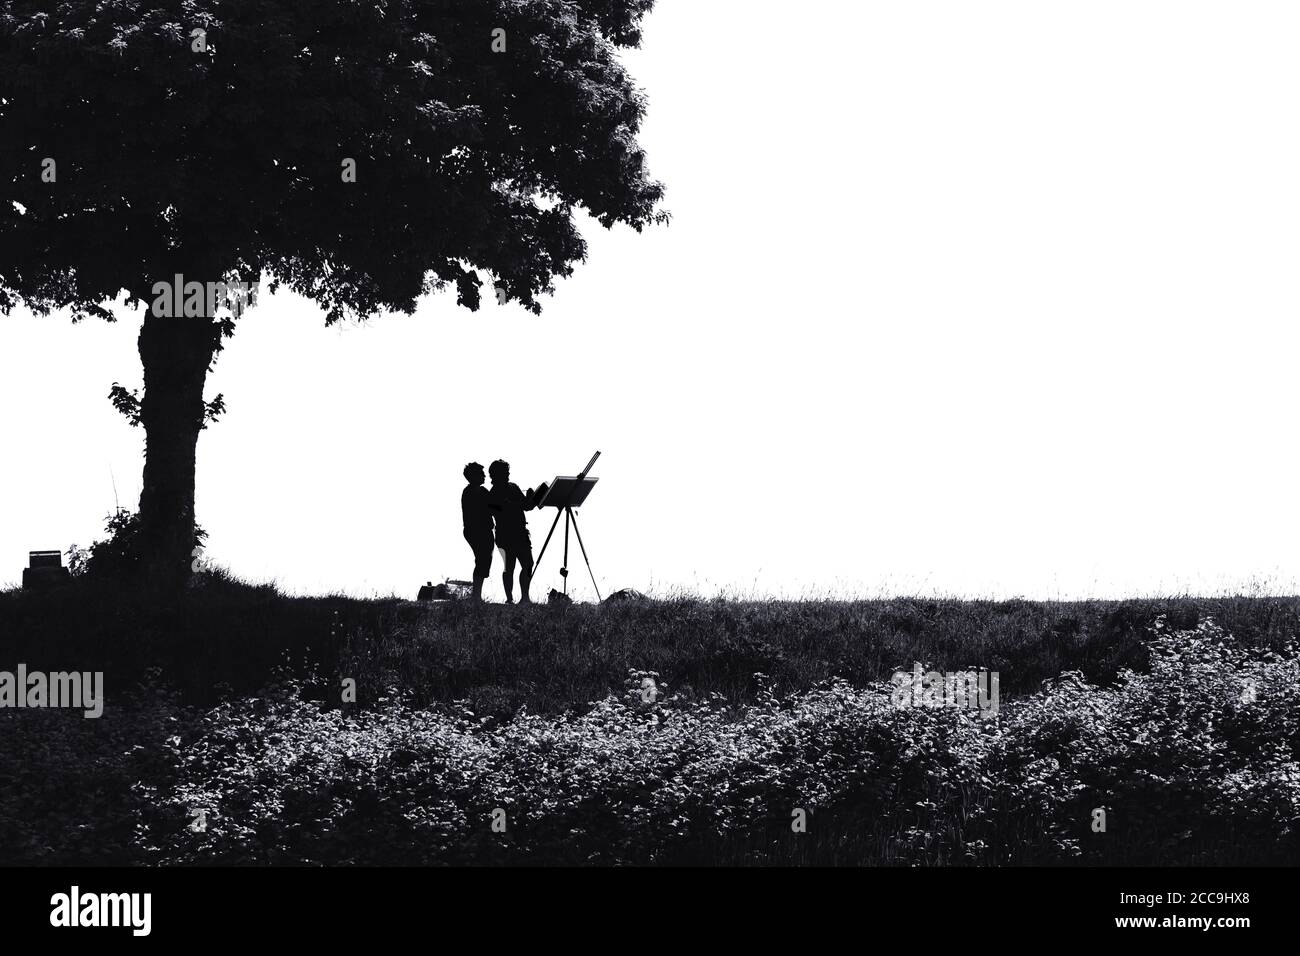 Noir et blanc, image presque silhouettée de deux peintres paysagistes au-dessous d'un arbre sur une digue en France Banque D'Images